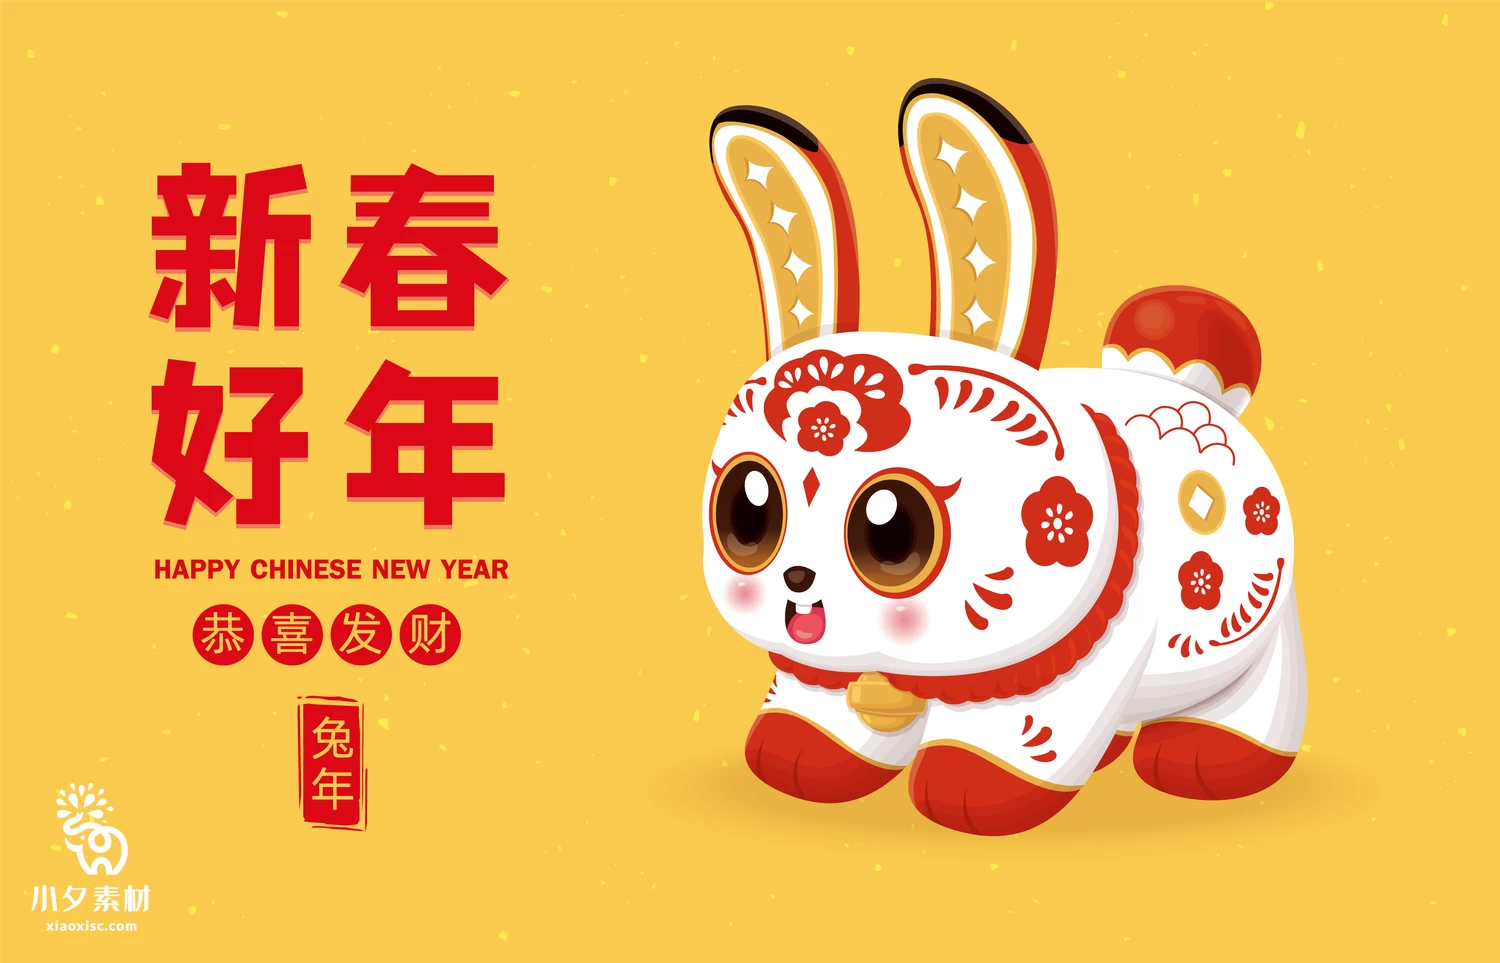 2023年兔年恭贺新春新年快乐喜庆节日宣传海报图片AI矢量设计素材【016】